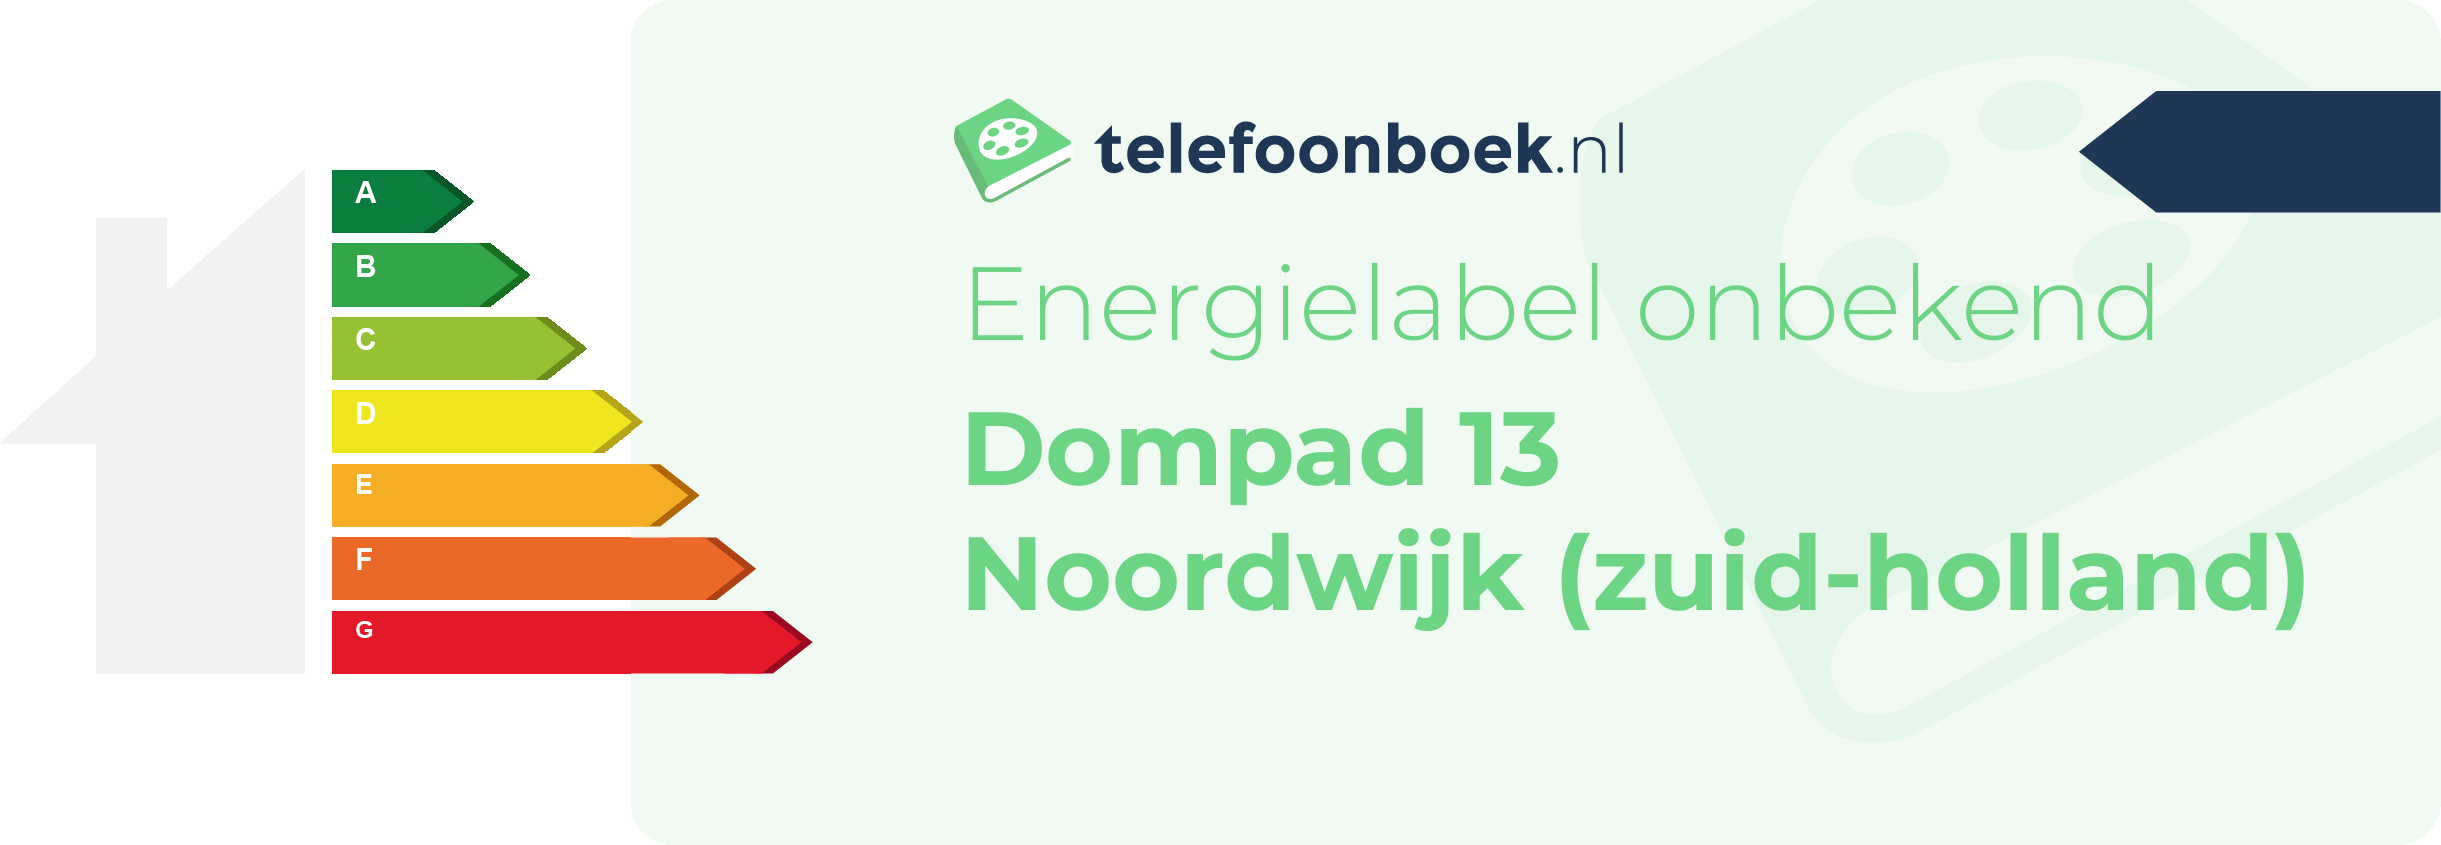 Energielabel Dompad 13 Noordwijk (Zuid-Holland)